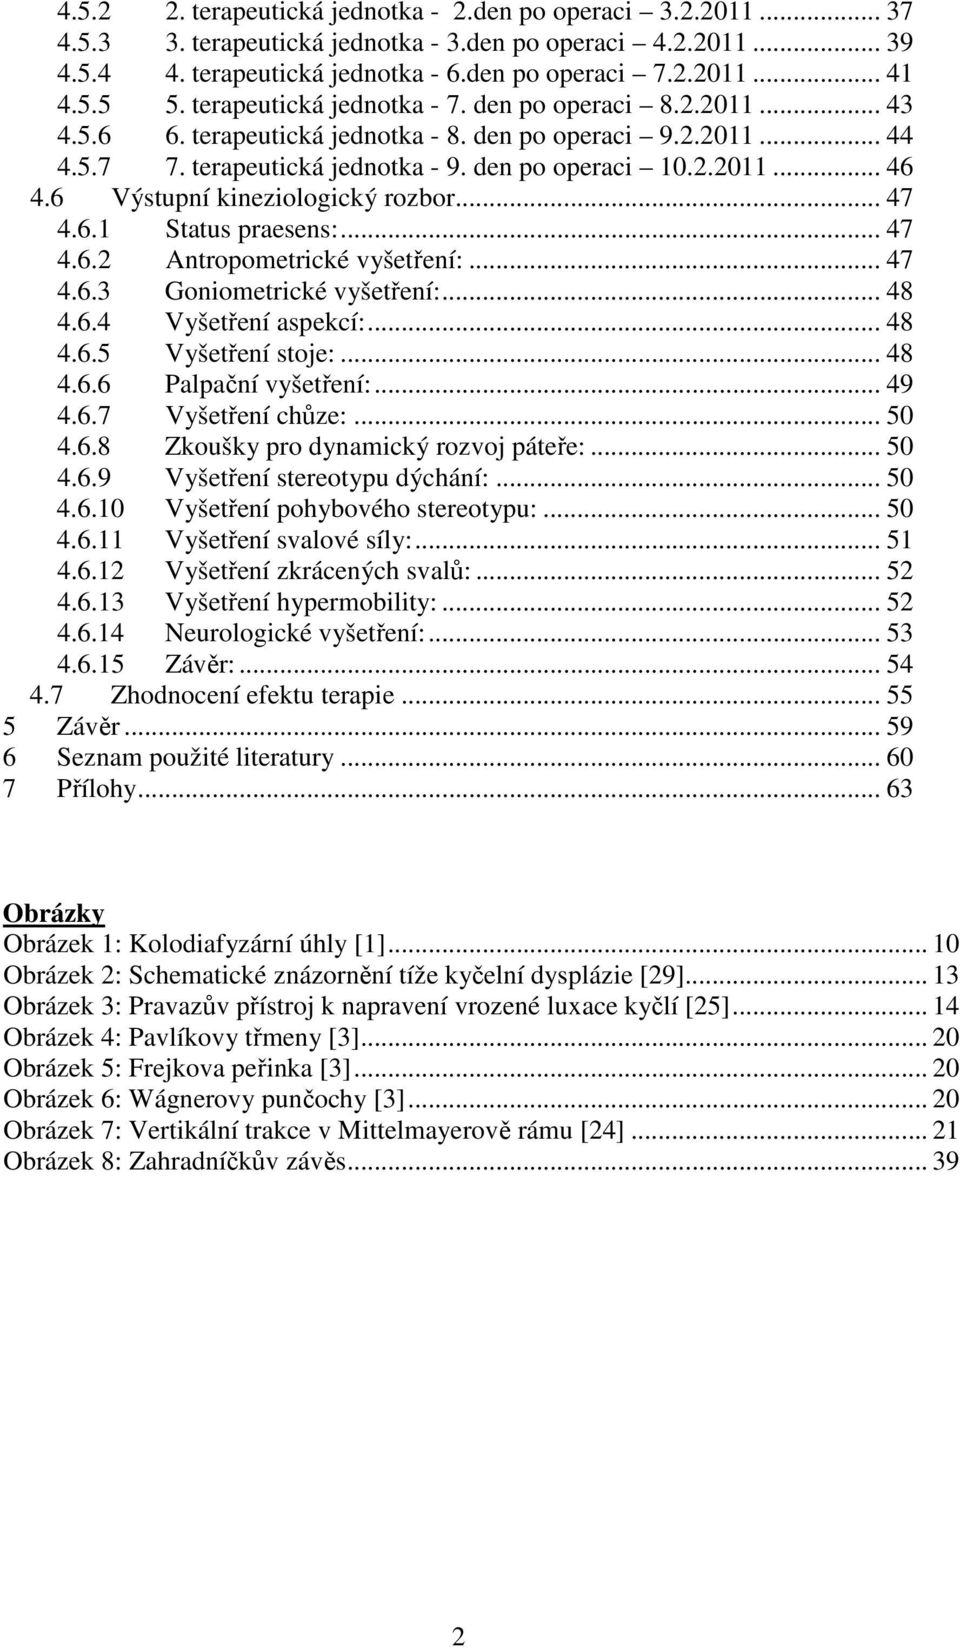 Kazuistika fyzioterapeutické péče o pacienta s diagnózou stav po operaci  kyčelního kloubu pro vrozenou vadu. Bakalářská práce - PDF Free Download